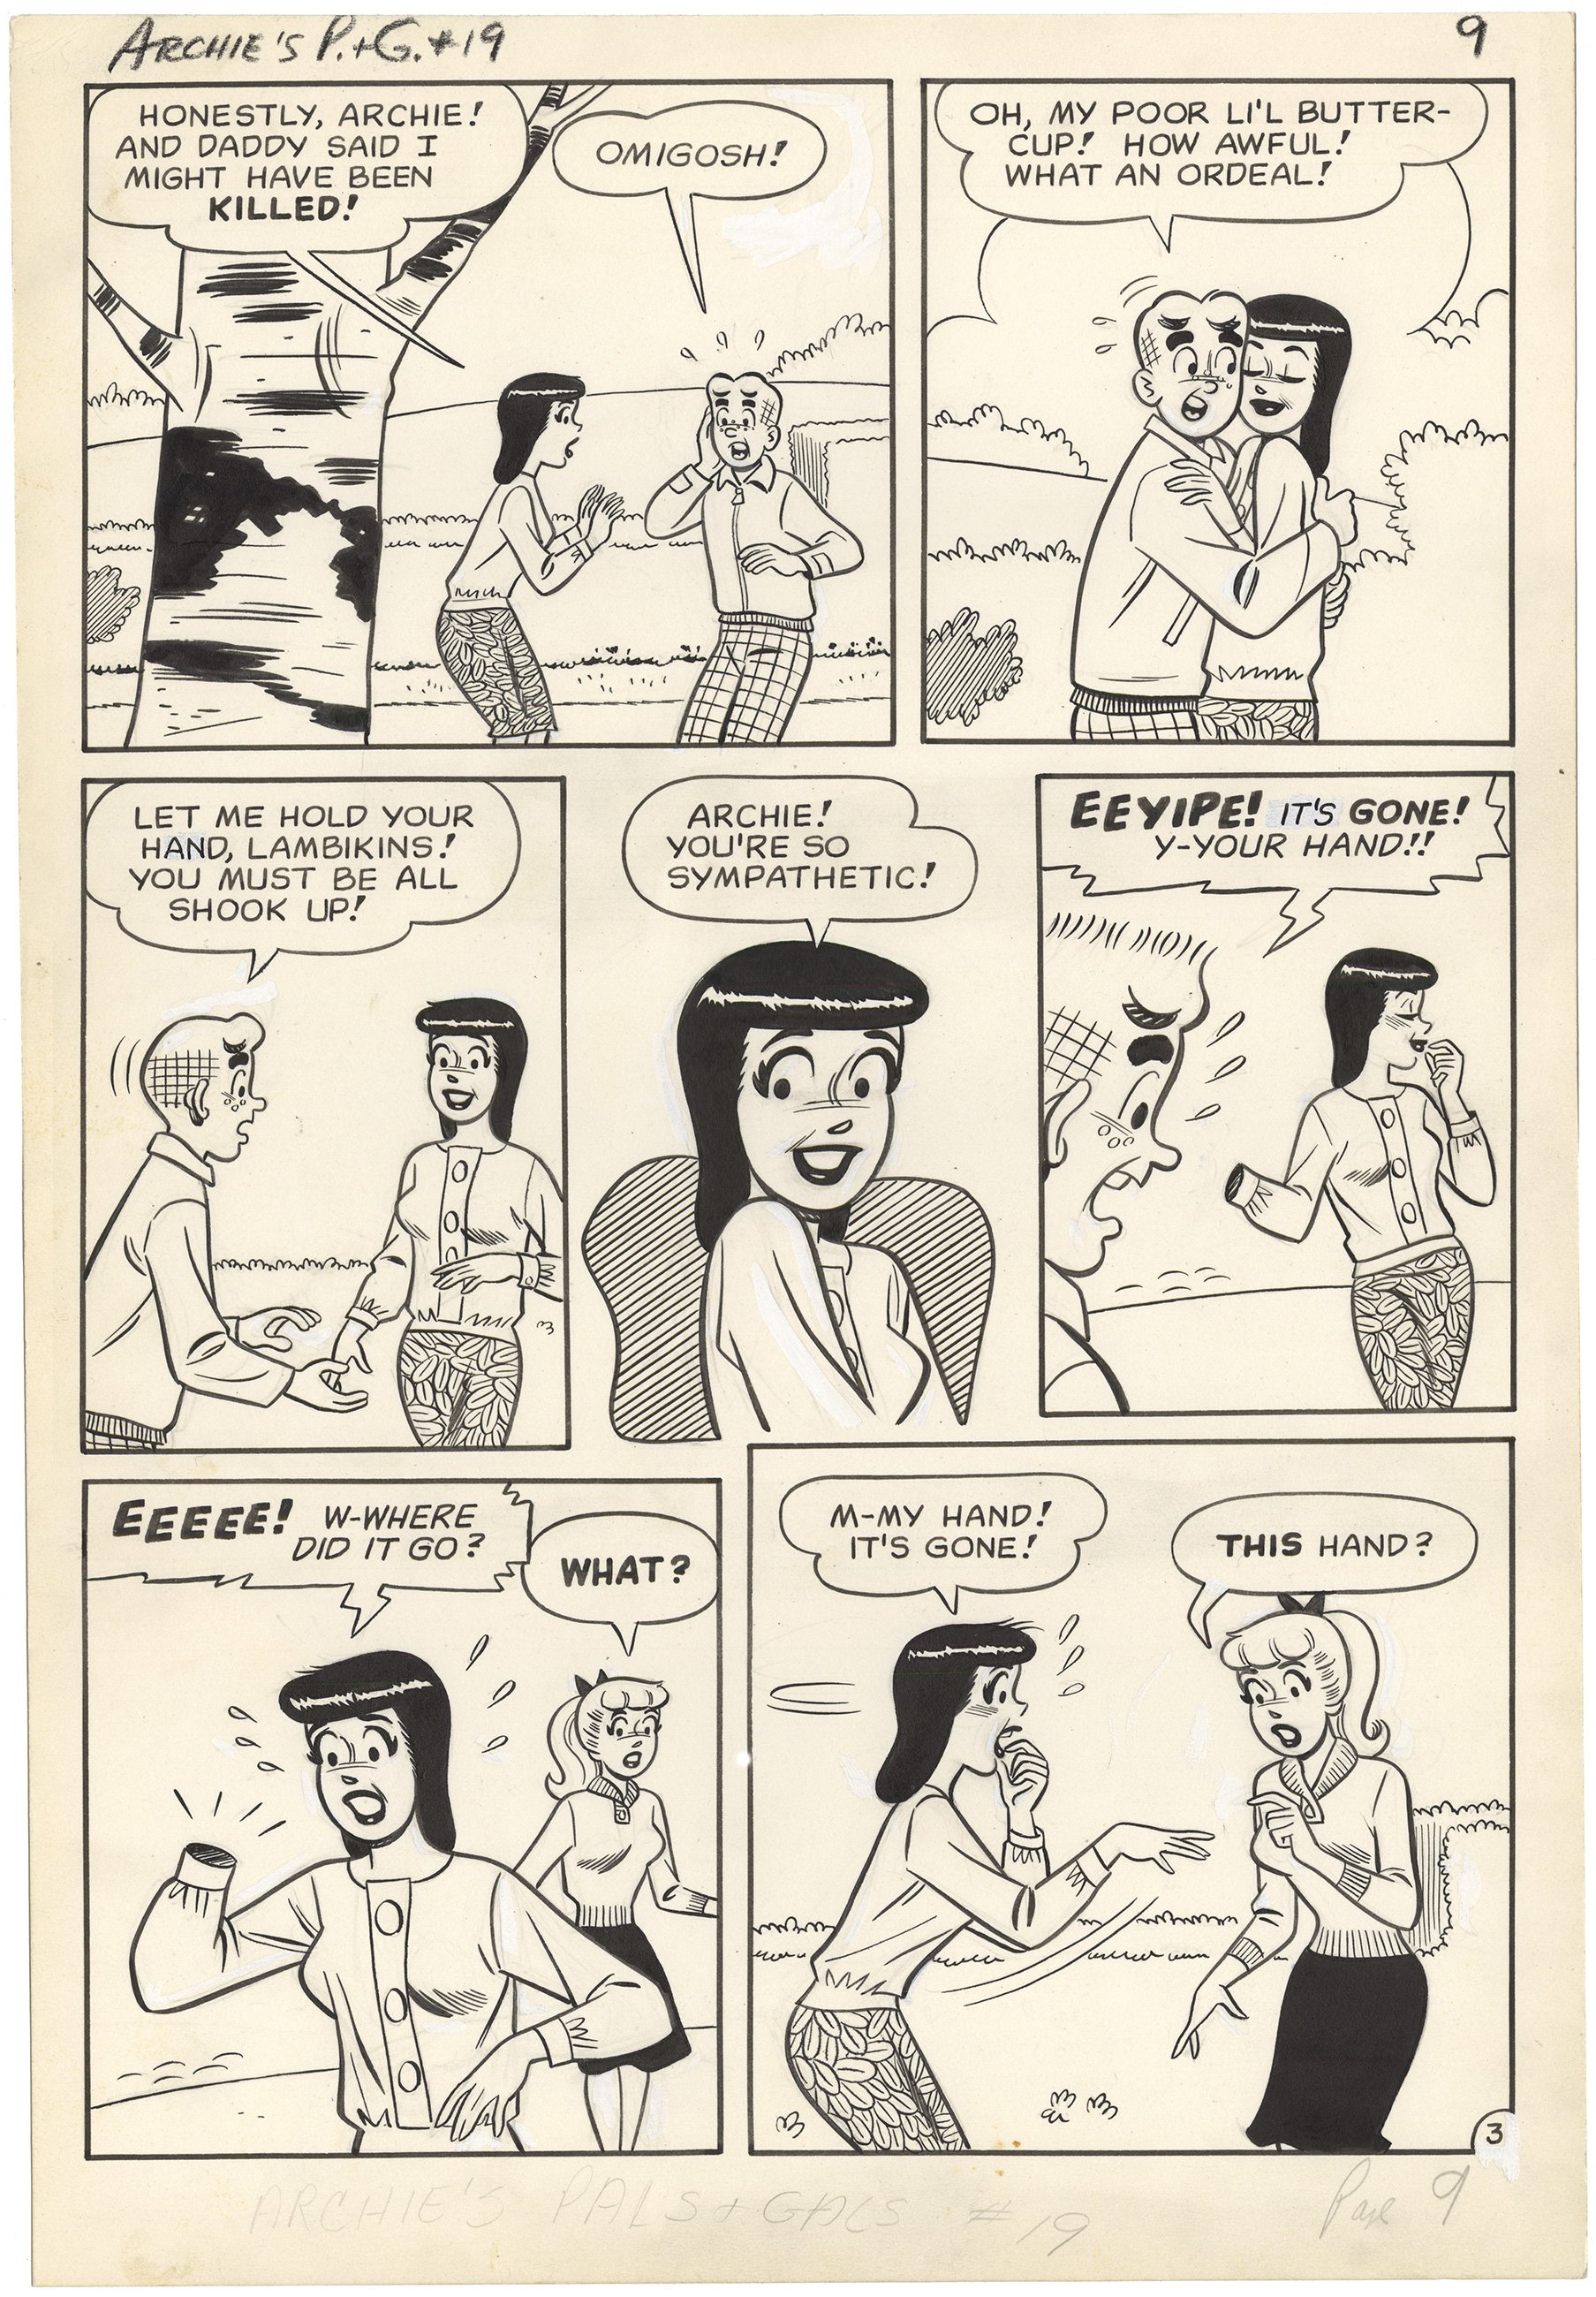 Archie’s Pals “n” Gals Issue, #19 p3